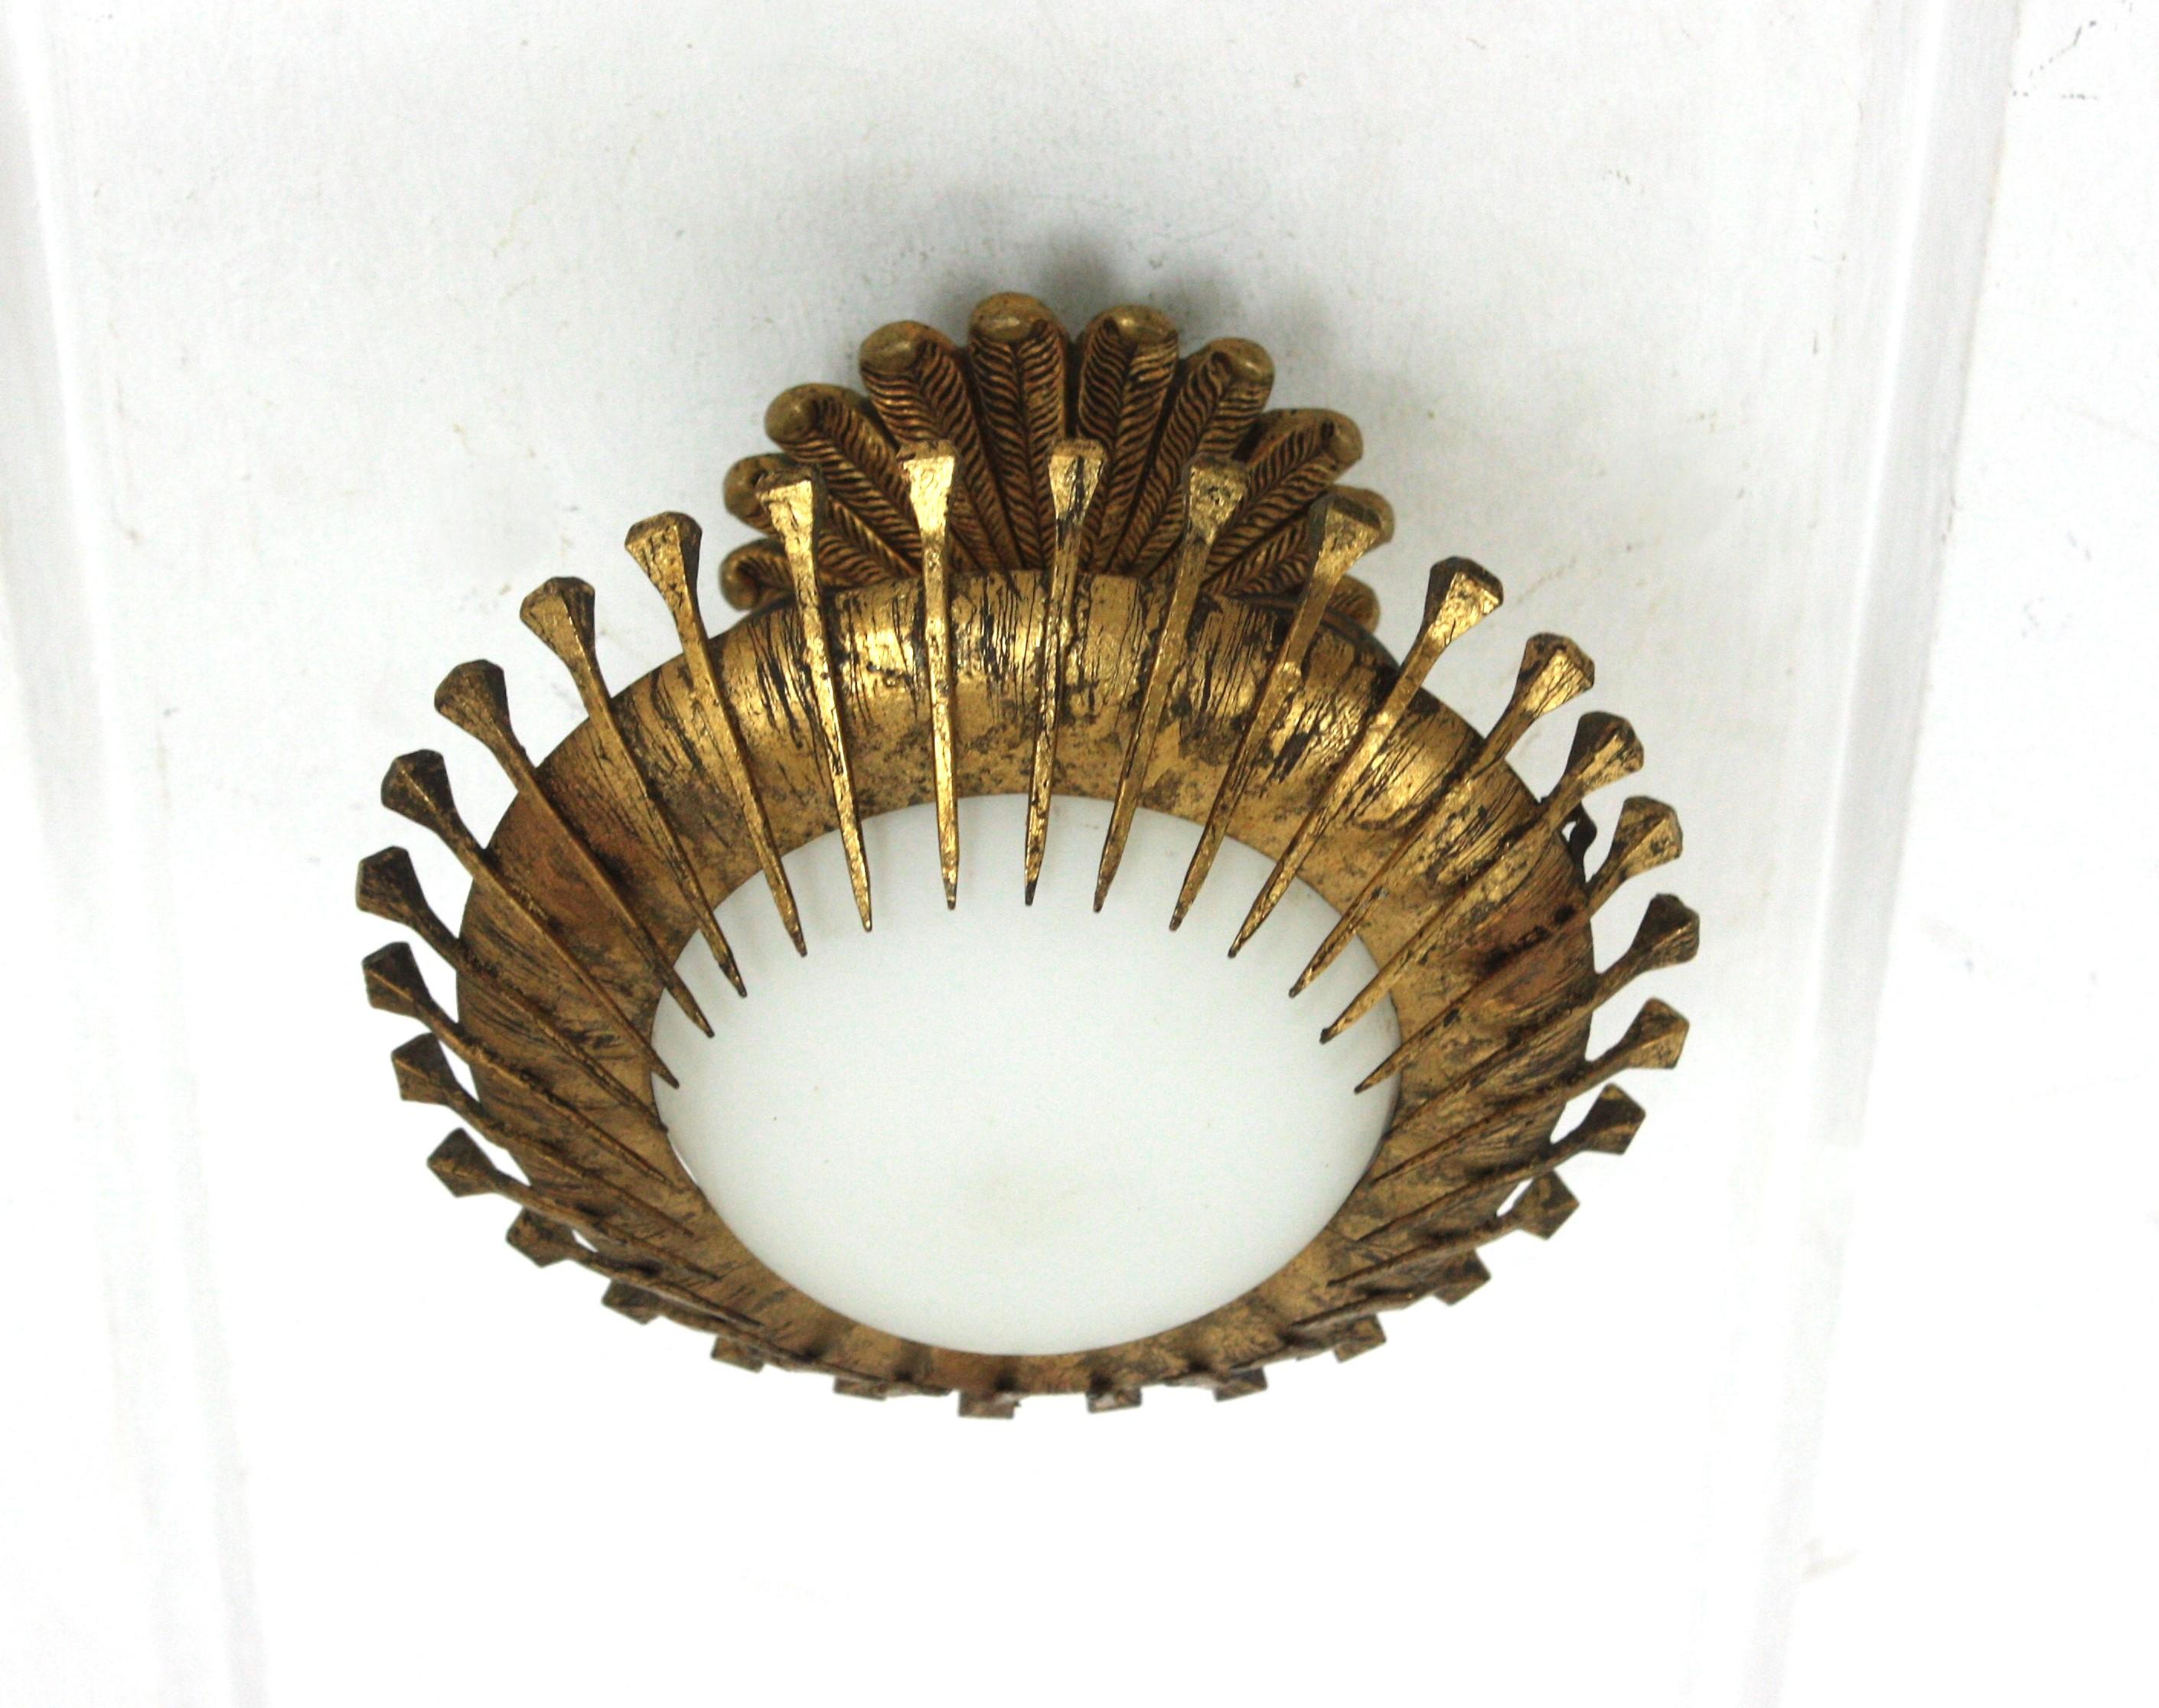 Mini-Sonnenschliff-Leuchte / Unterputzmontage, vergoldetes Eisen, Milchglas, Blattgold. Spanien, 1950er Jahre
Brutalistische Deckenleuchte aus vergoldetem Eisen mit Nägeln und einem Baldachin aus bronzenem Laubwerk.
Diese kleine Sunburst-Leuchte ist